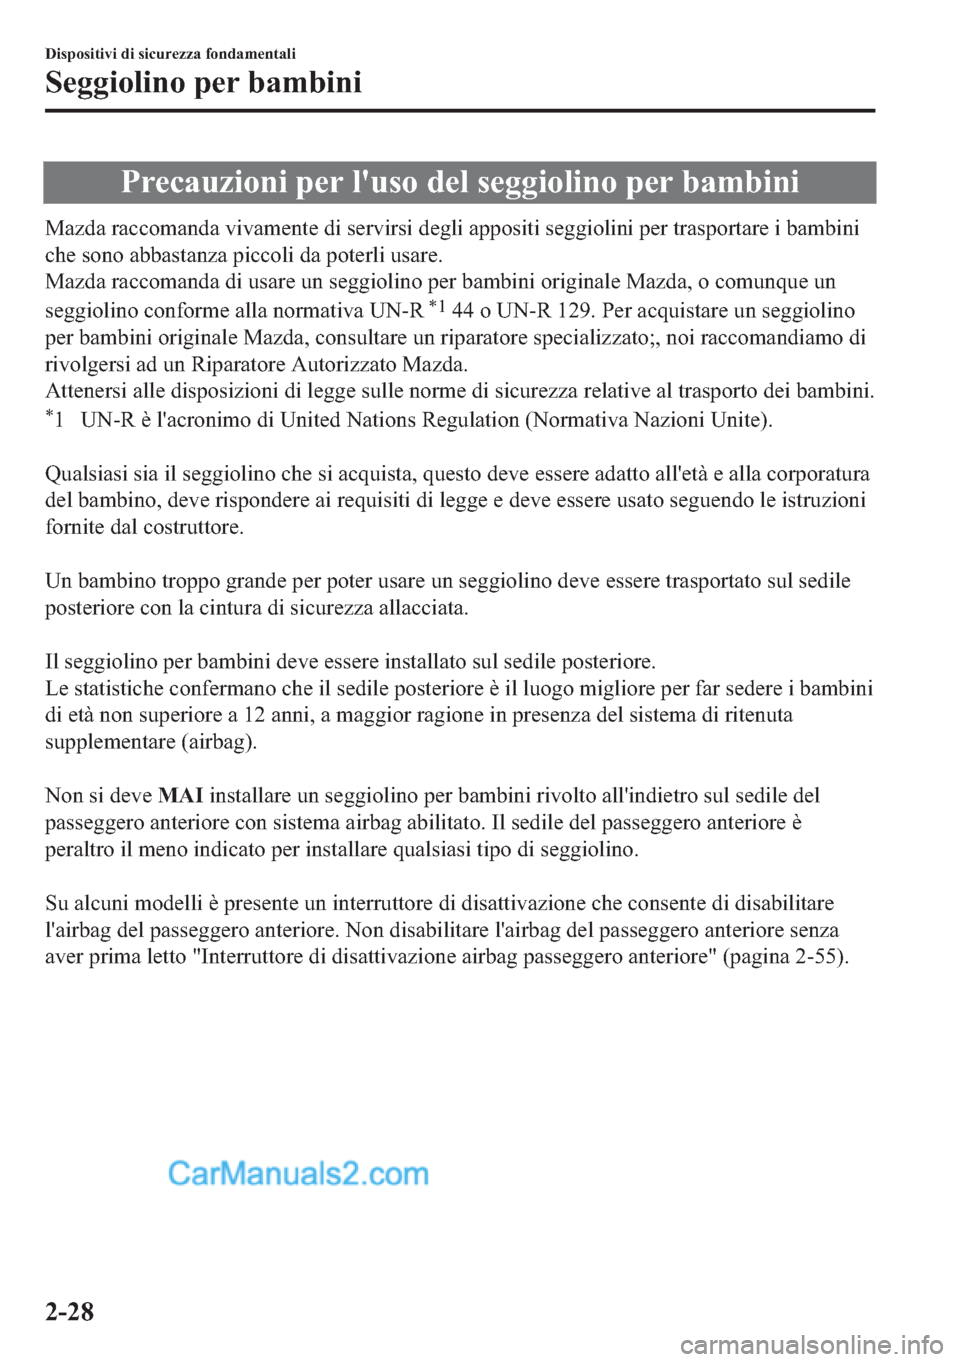 MAZDA MODEL 2 2019  Manuale del proprietario (in Italian) �3�U�H�F�D�X�]�L�R�Q�L��S�H�U��O�
�X�V�R��G�H�O��V�H�J�J�L�R�O�L�Q�R��S�H�U��E�D�P�E�L�Q�L
�0�D�]�G�D��U�D�F�F�R�P�D�Q�G�D��Y�L�Y�D�P�H�Q�W�H��G�L��V�H�U�Y�L�U�V�L��G�H�J�O�L��D�S�S�R�V�L�